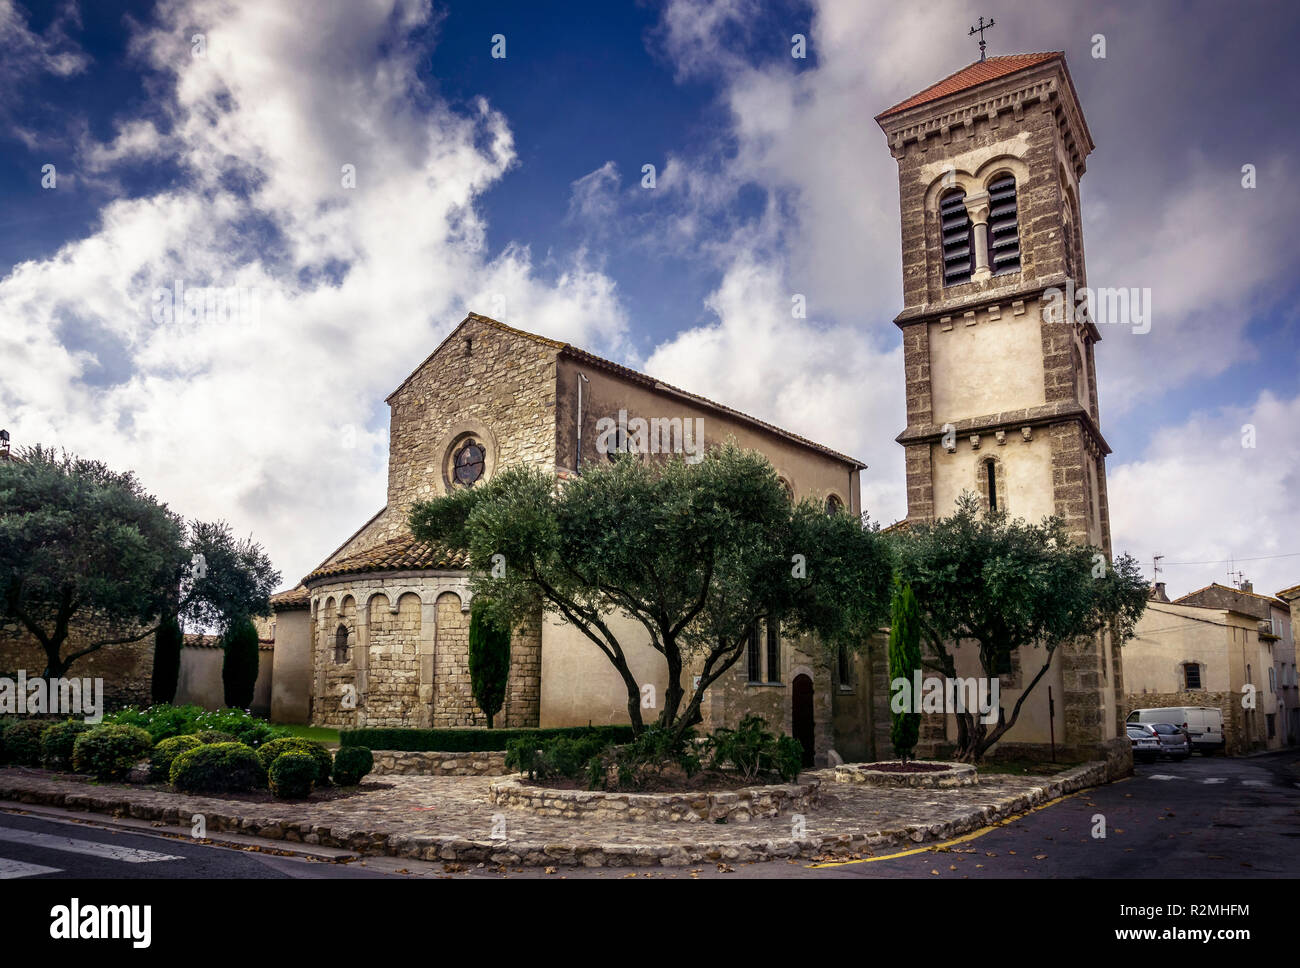 La chiesa romanica di San Martino costruita nell' XI secolo la torre campanaria è stata costruita nel 1851 in stile neo-romanico Foto Stock